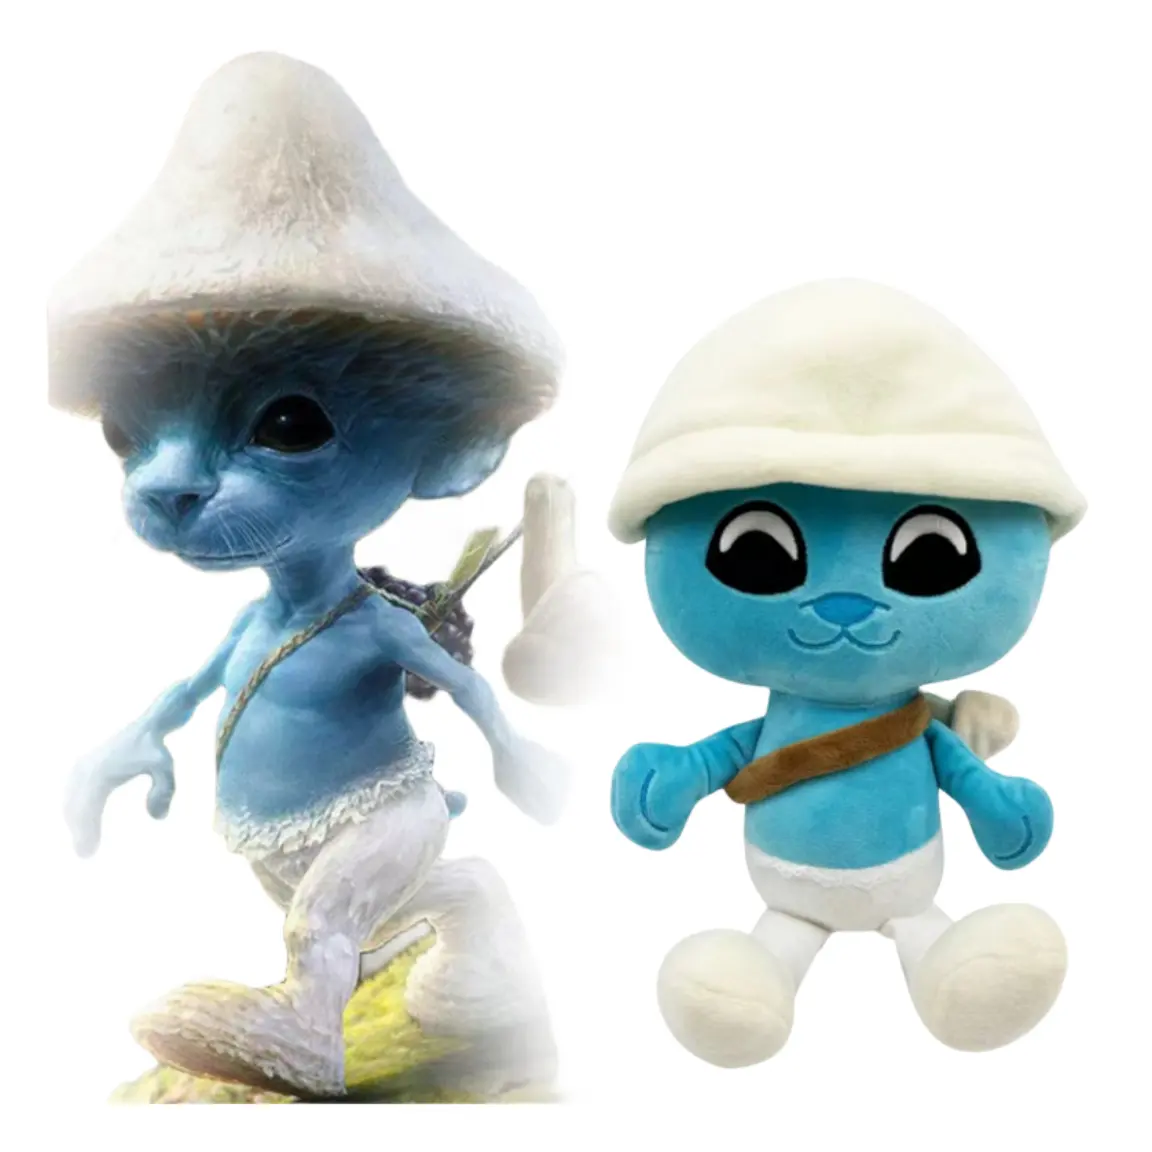 Individuelle Weihnachtsgeschenke für Kinder Plüsch kreativer Cartoon-Spielcharakter weiche Puppen Mushrom blaue Smurfliege Katze Plüsch-Spielzeug